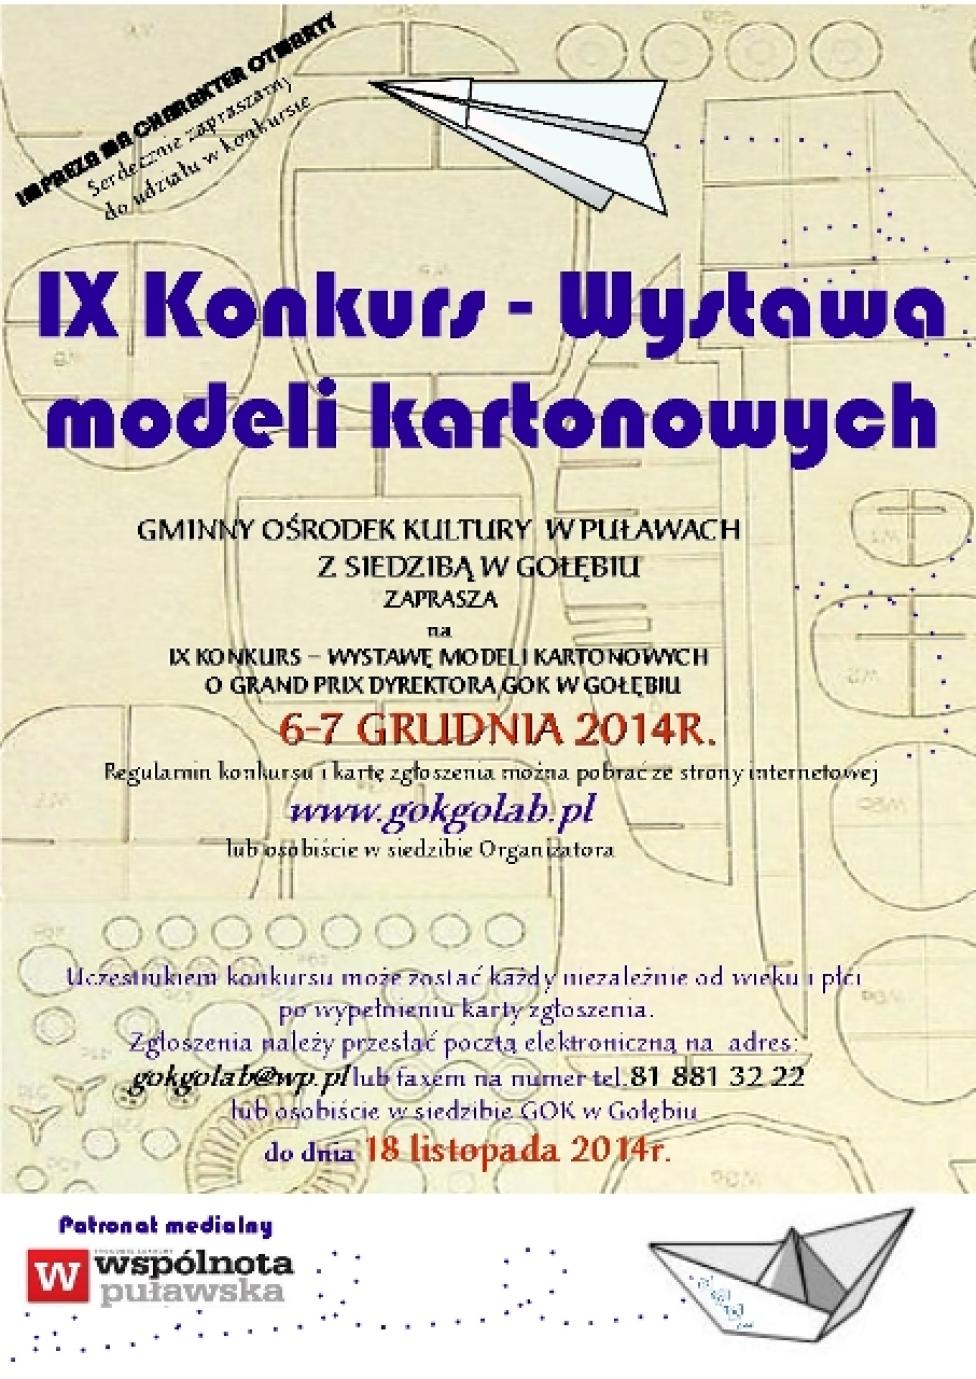 IX Konkurs-Wystawa Modeli Kartonowych w Gołębiu